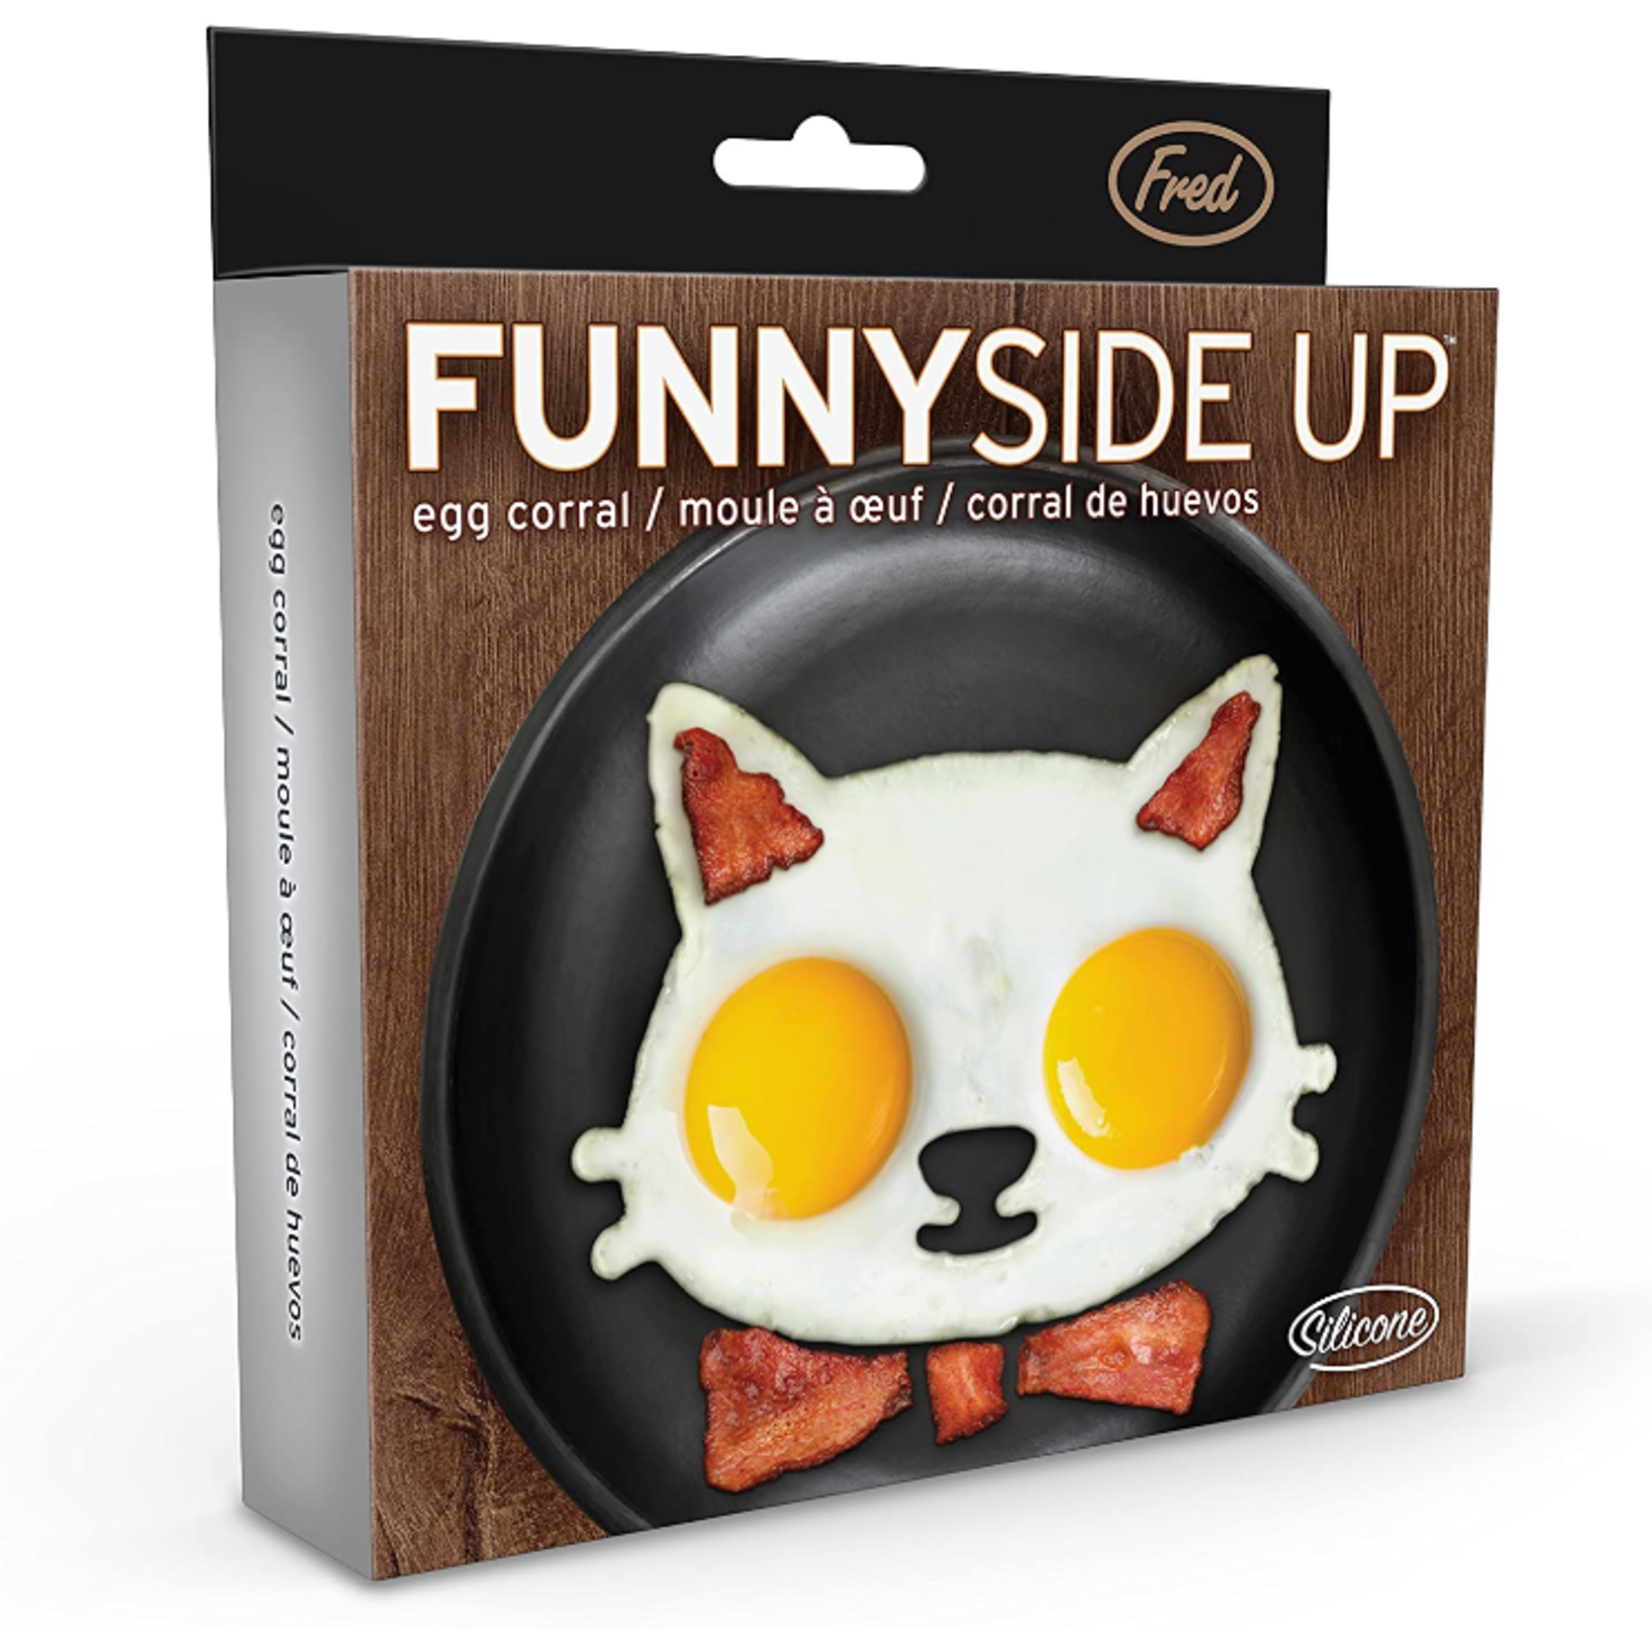 Funny Side Up Egg Molds - GEEKYGET